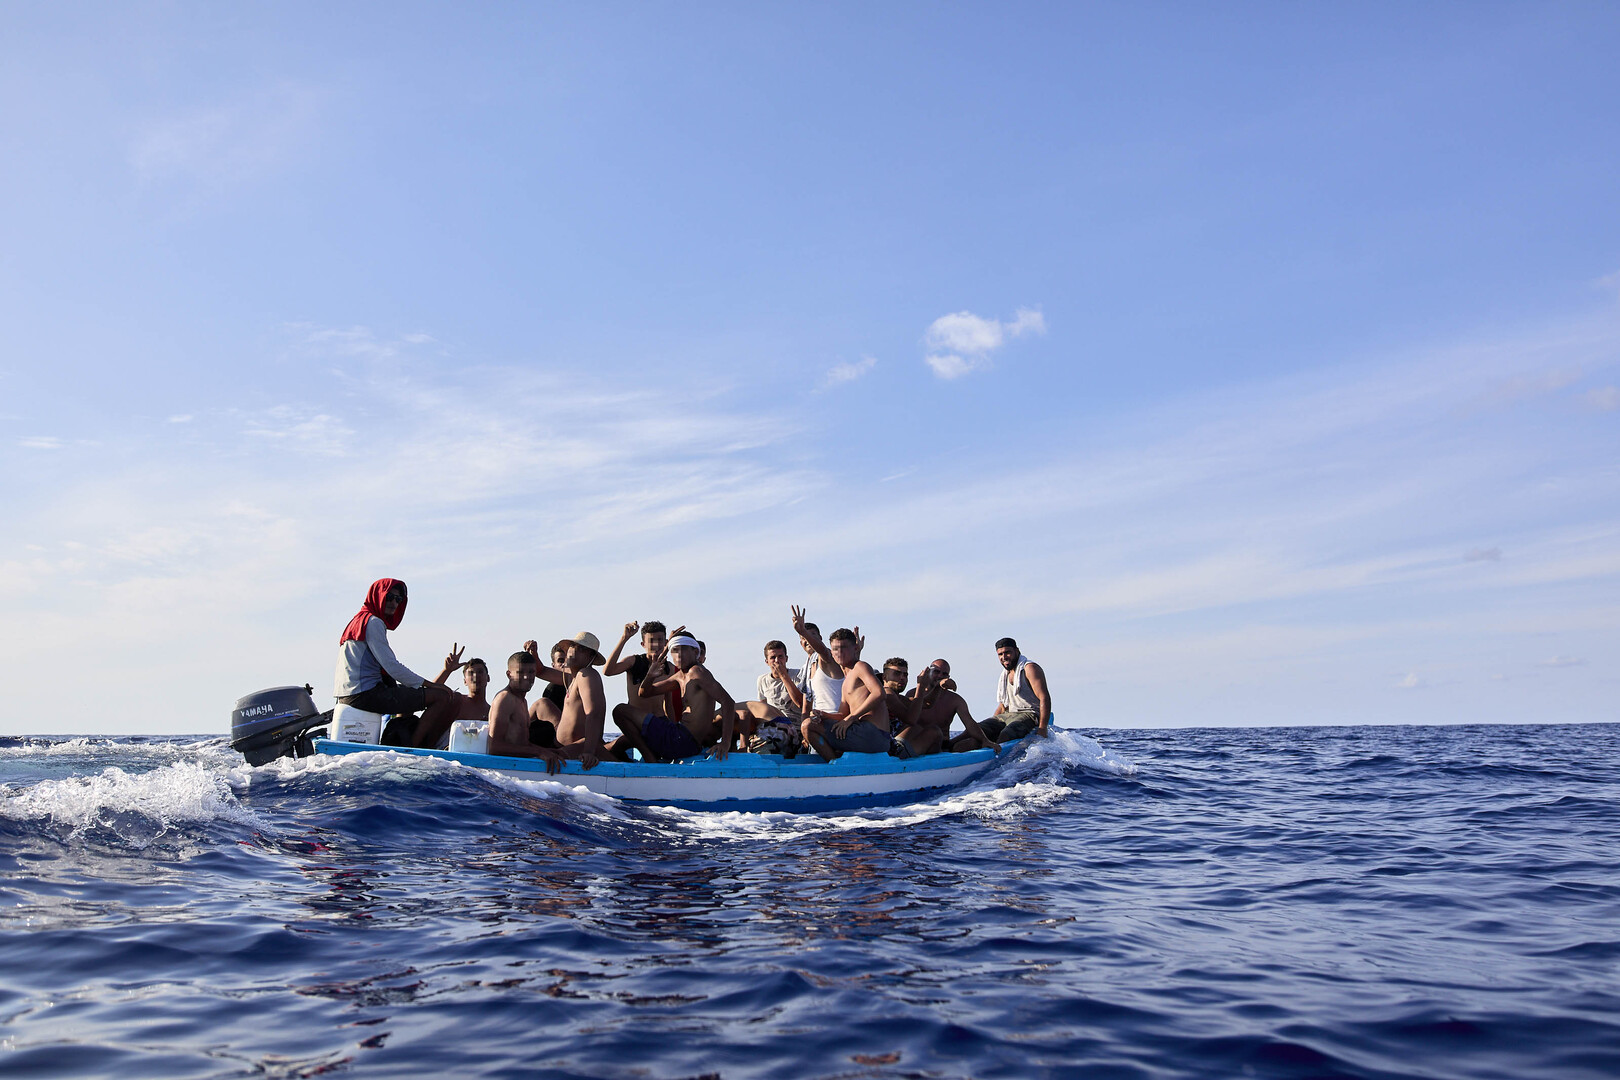 تركيا تعلن عن إنقاذ وضبط 204 مهاجرين غير شرعيين في موغلا وإزمير غربي البلاد